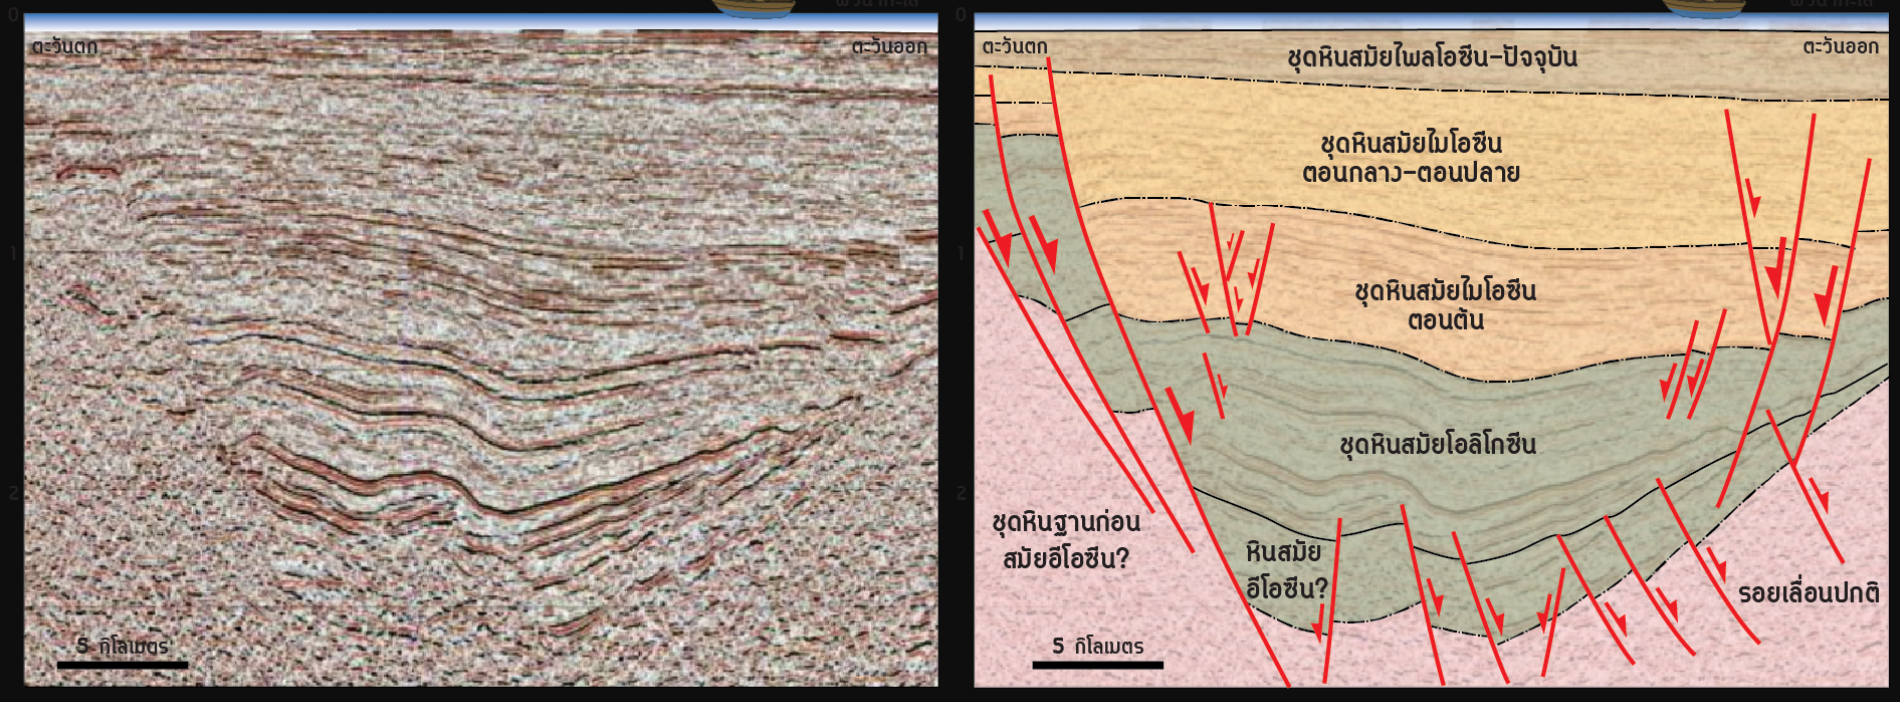 งานสำรวจโครงสร้างทางธรณีวิทยาที่อยู่ใต้ผิวดิน (Subsurface Geological structures) 